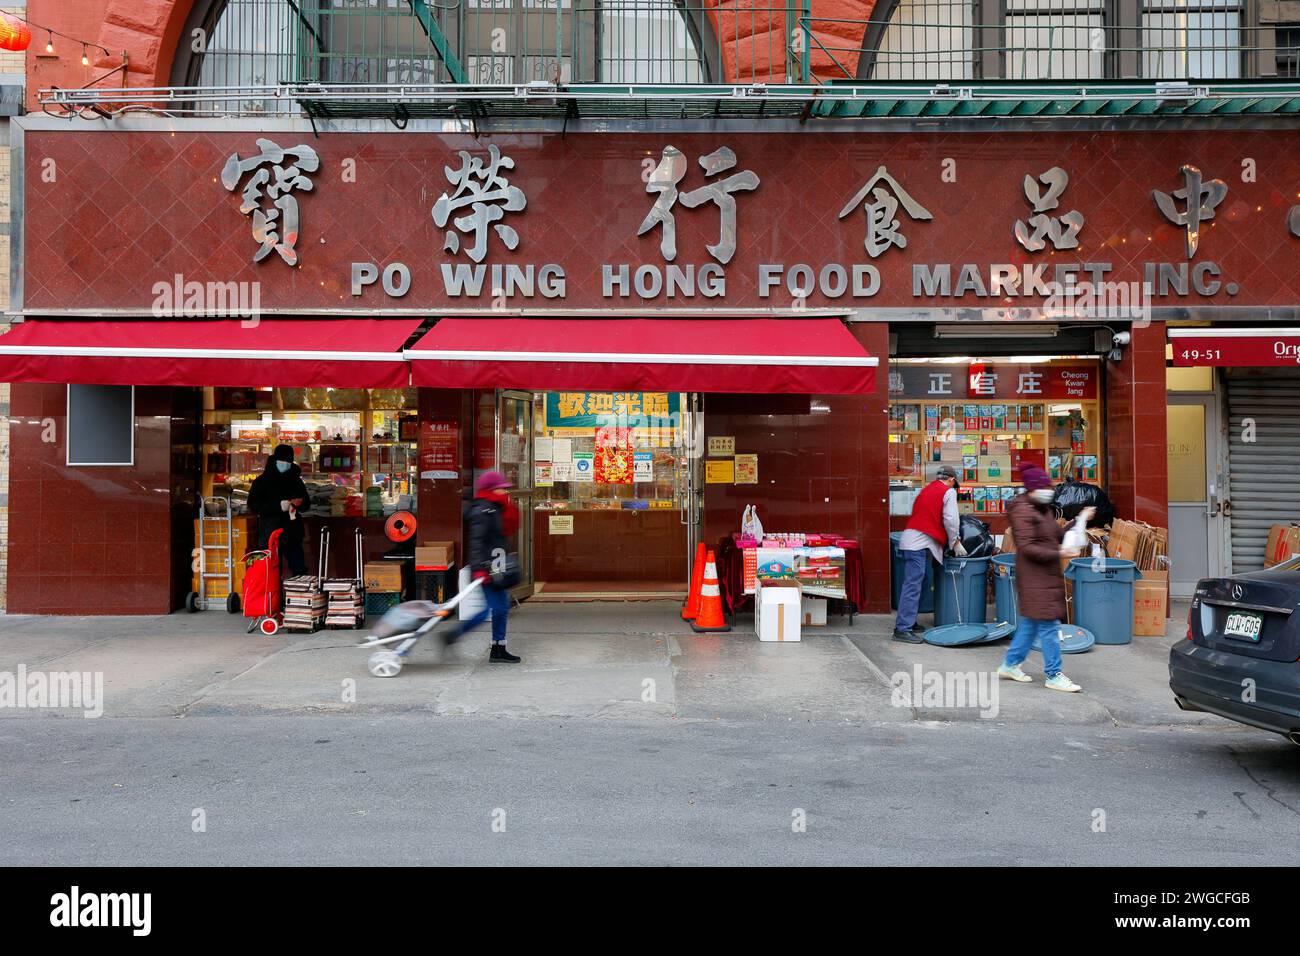 Po Wing Hong Food Market 寶榮行食品中心, 49-51 Elizabeth St, New York, NYC vitrine d'une épicerie chinoise et d'un magasin d'ingrédients de soupe dans Manhattan Chinatown. Banque D'Images